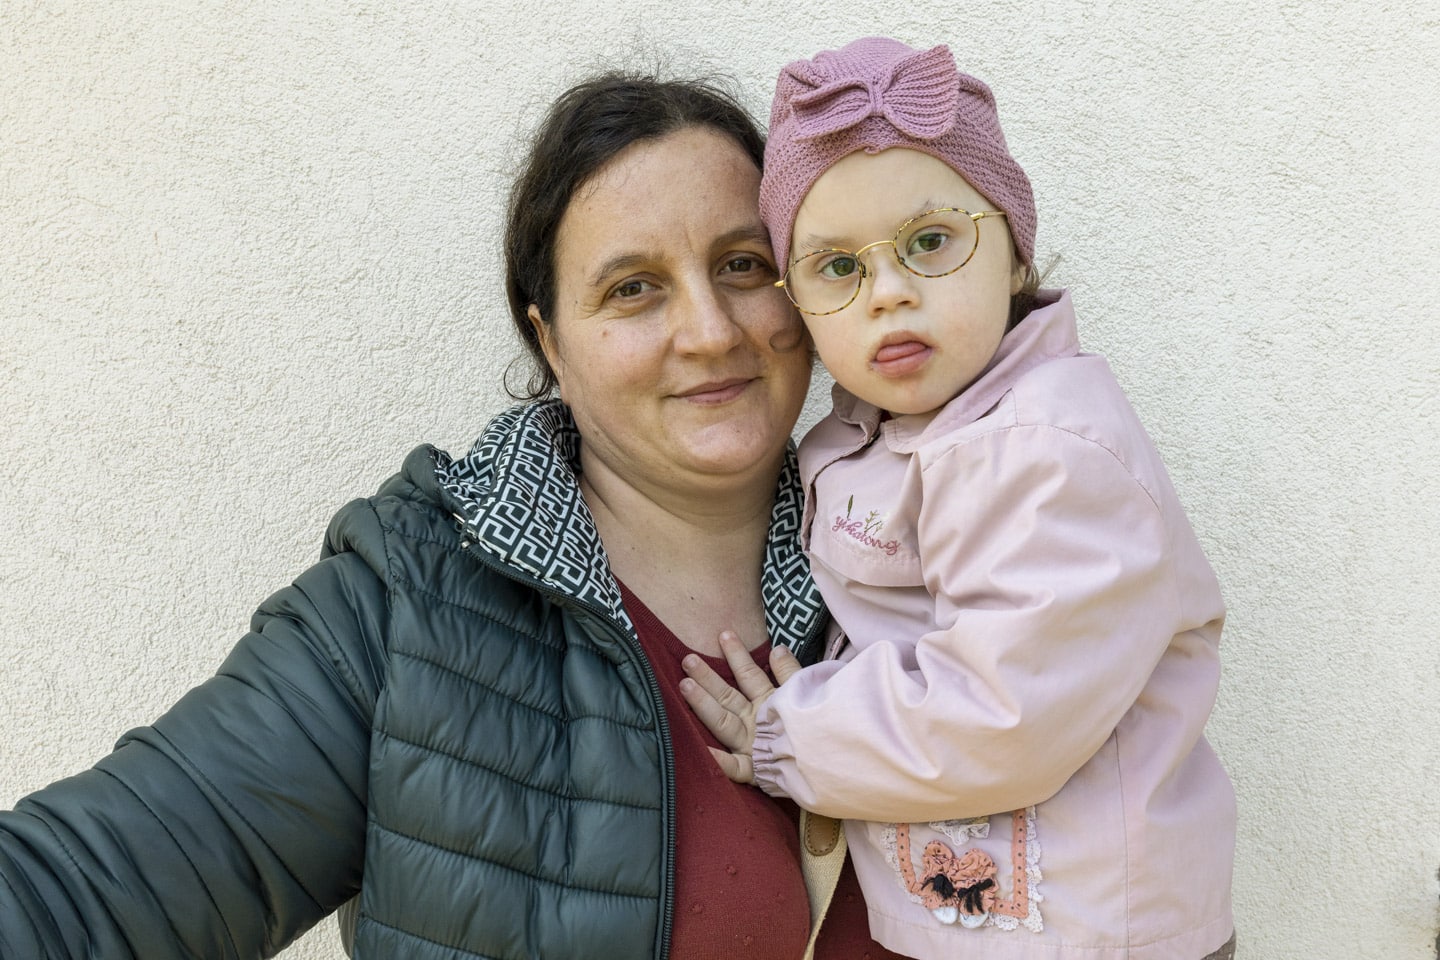 Flicka med Downs syndrom och hennes mamma.